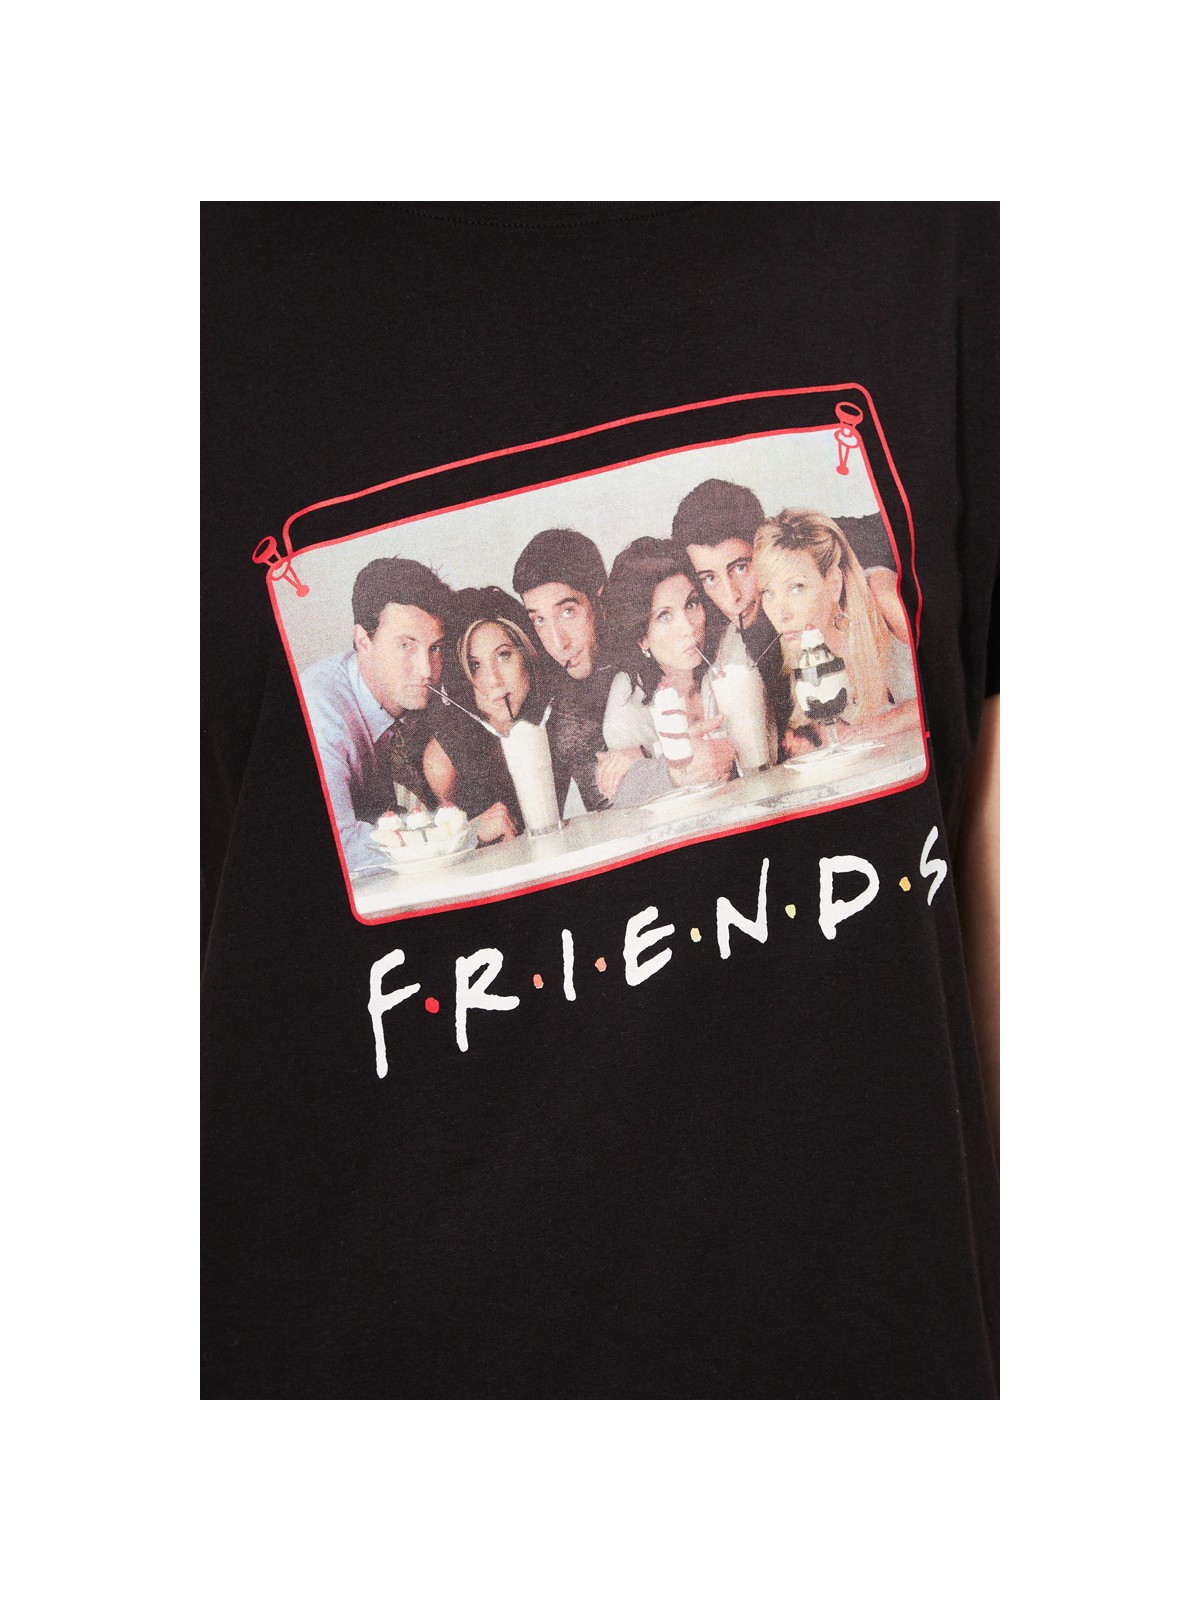 Friends Camisetas con manga corta Mujer